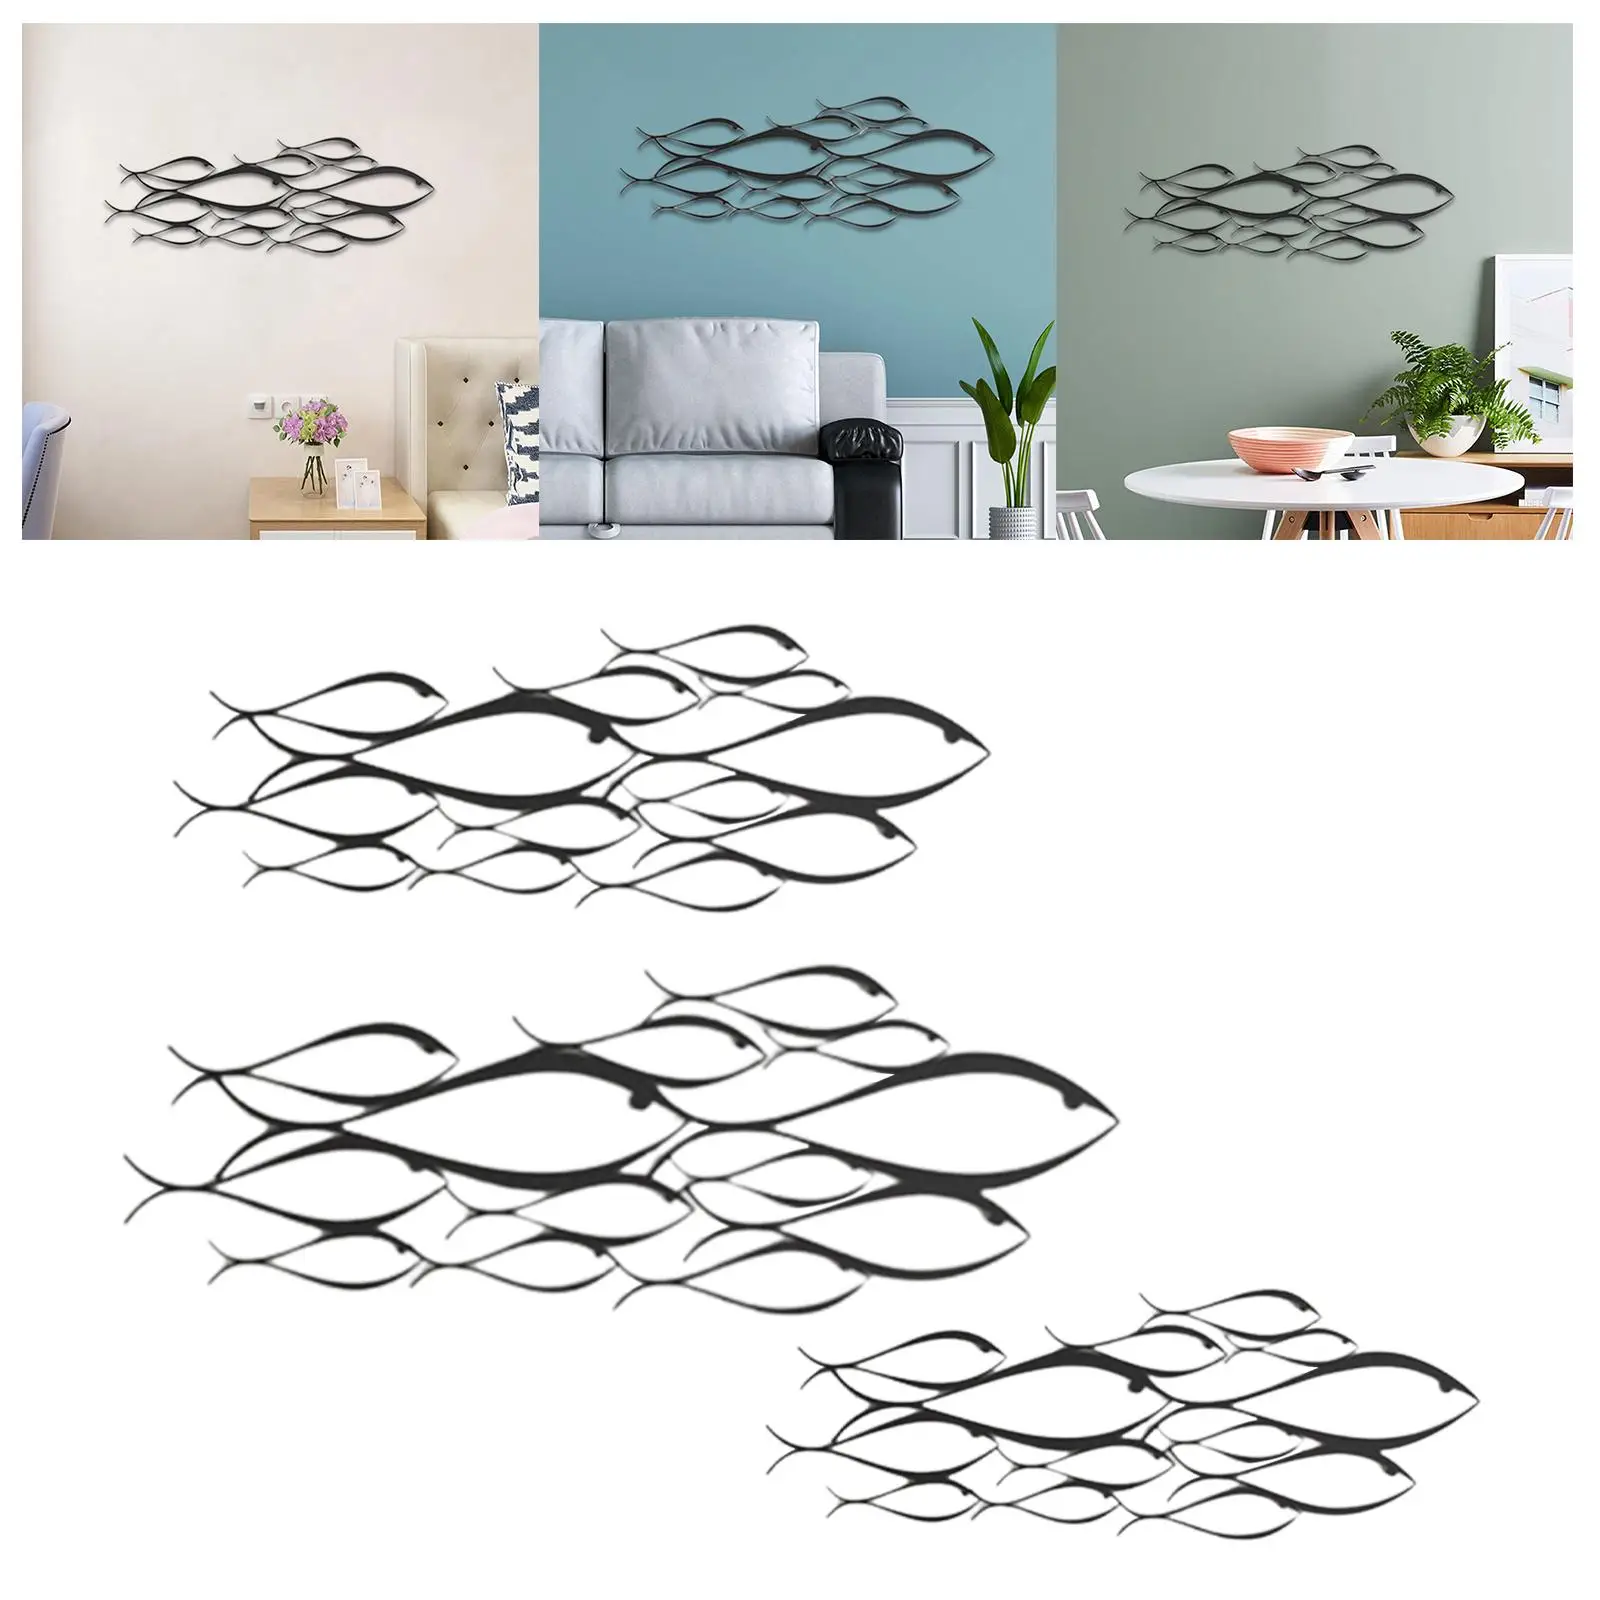 Metal Fish Wall Sculpture Art Decor Wall Decor, for Bedroom, Living Room,